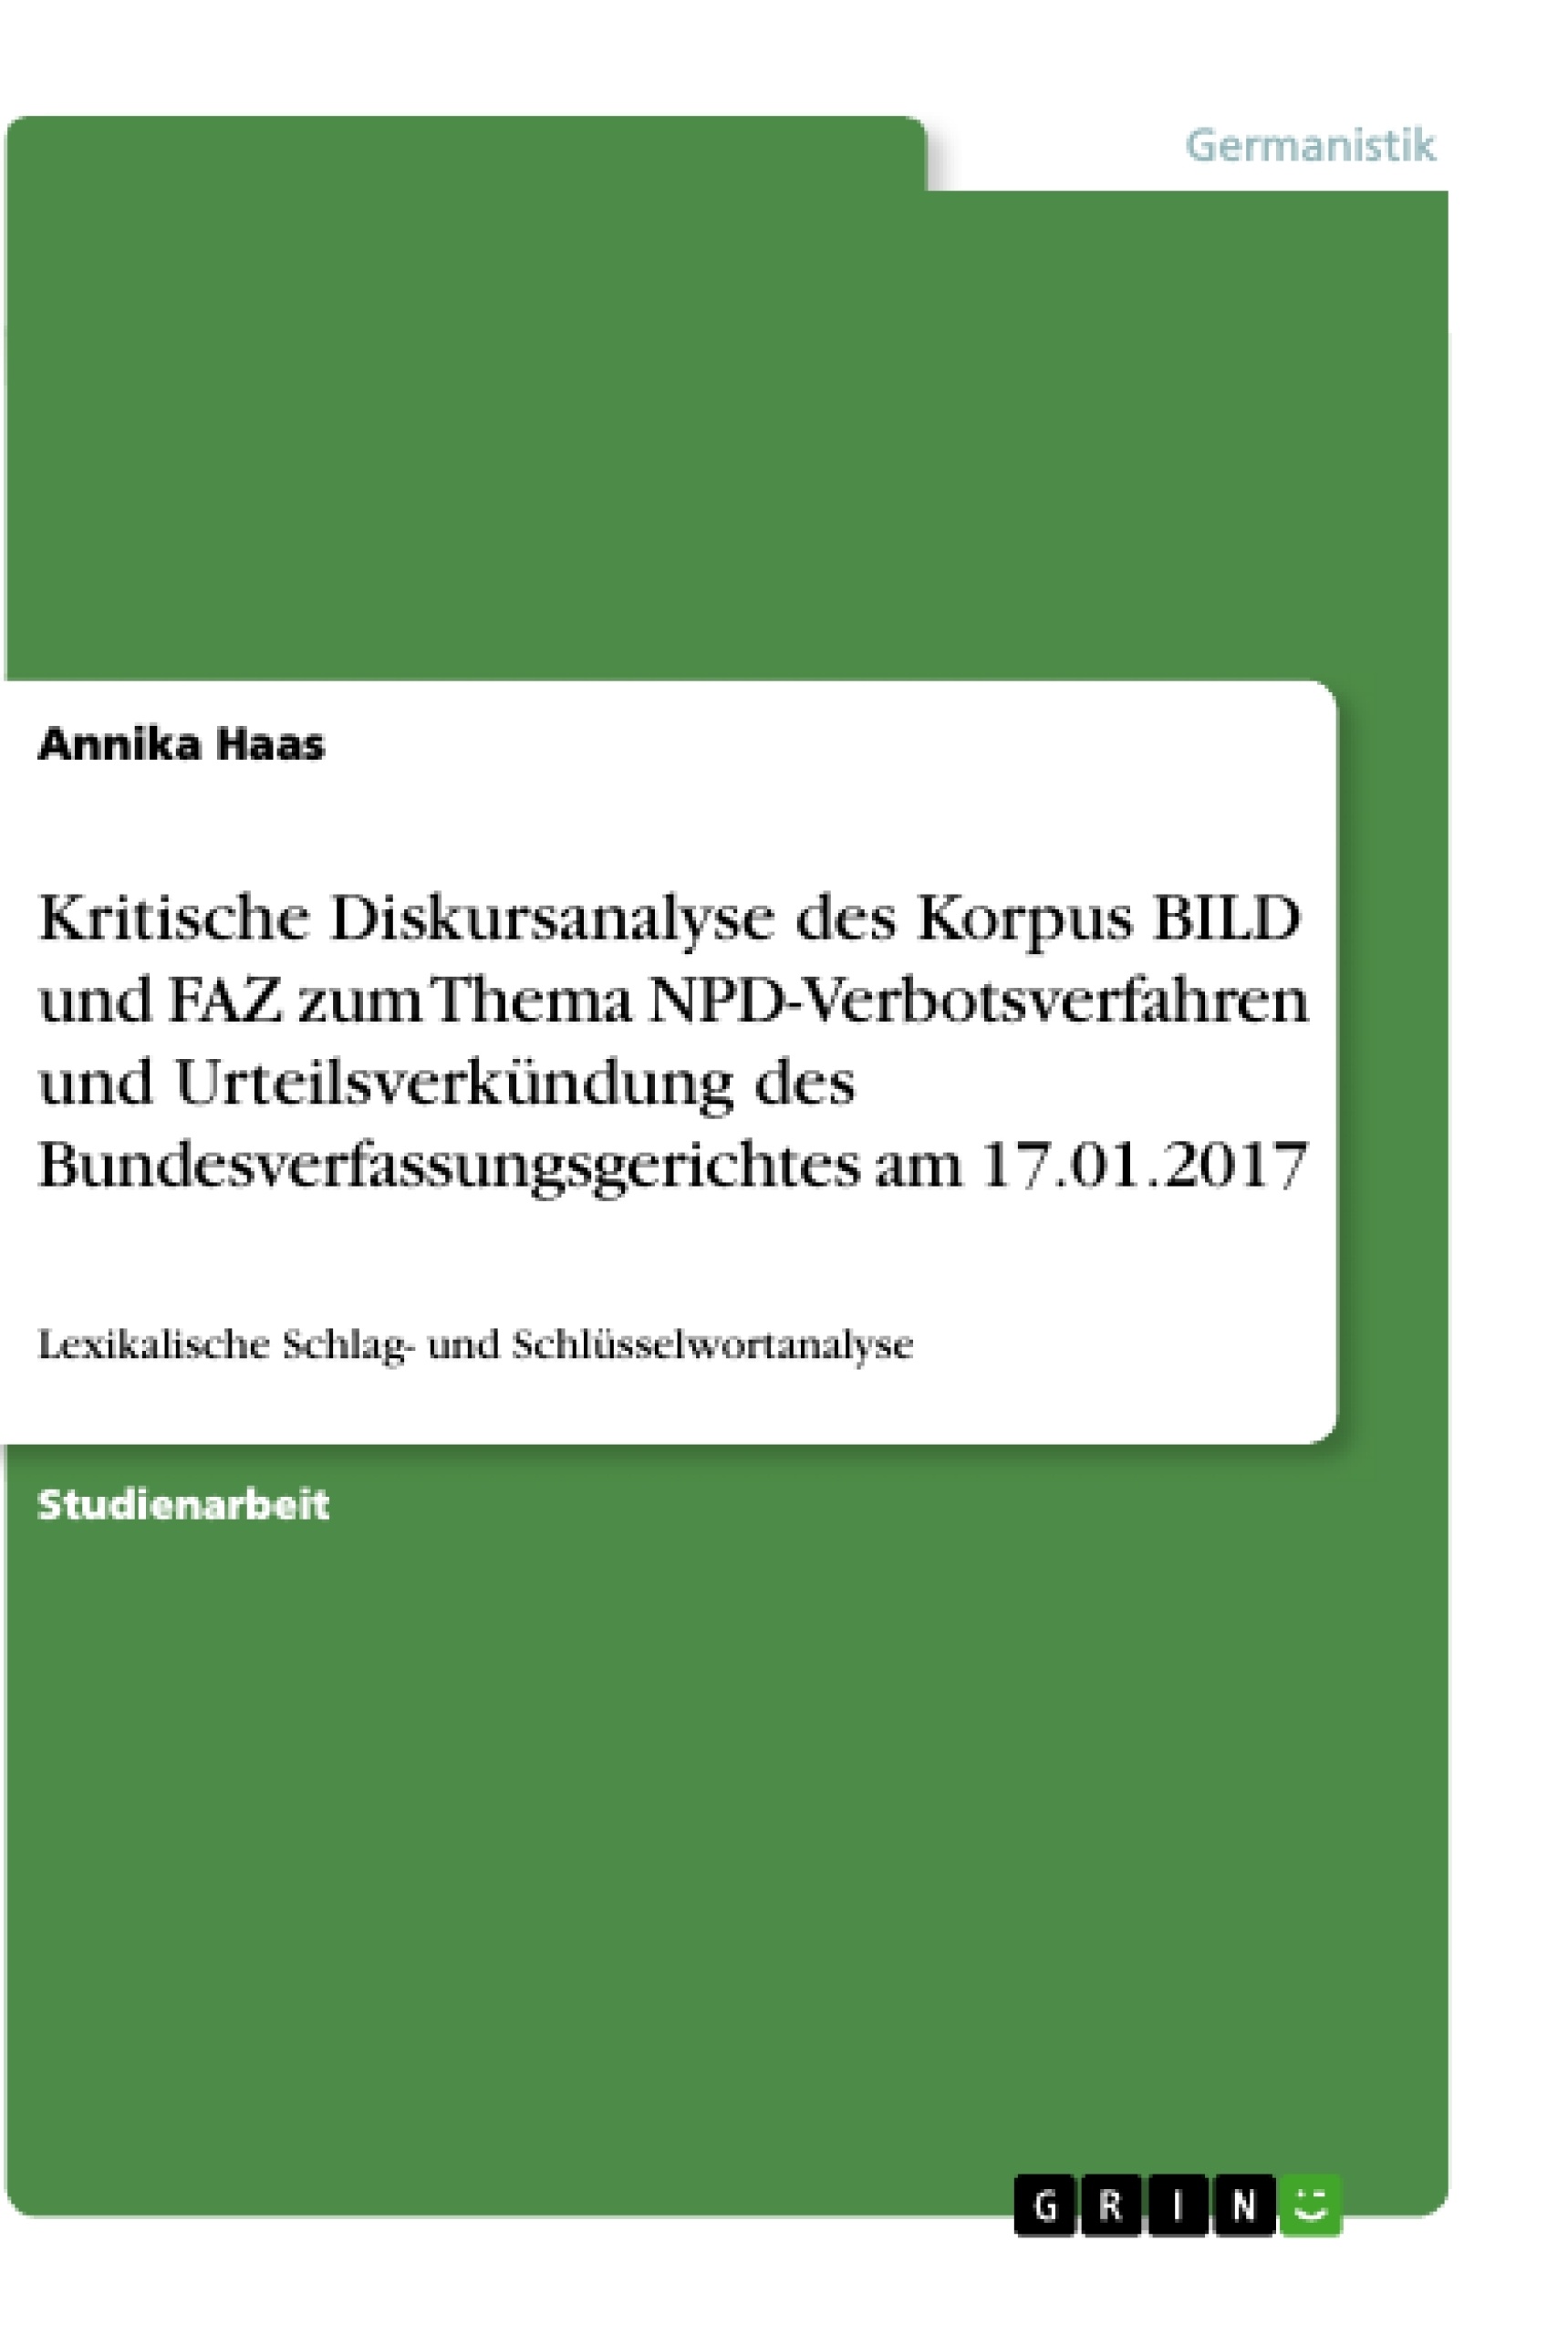 Title: Kritische Diskursanalyse des Korpus BILD und FAZ zum Thema NPD-Verbotsverfahren und Urteilsverkündung des Bundesverfassungsgerichtes am 17.01.2017